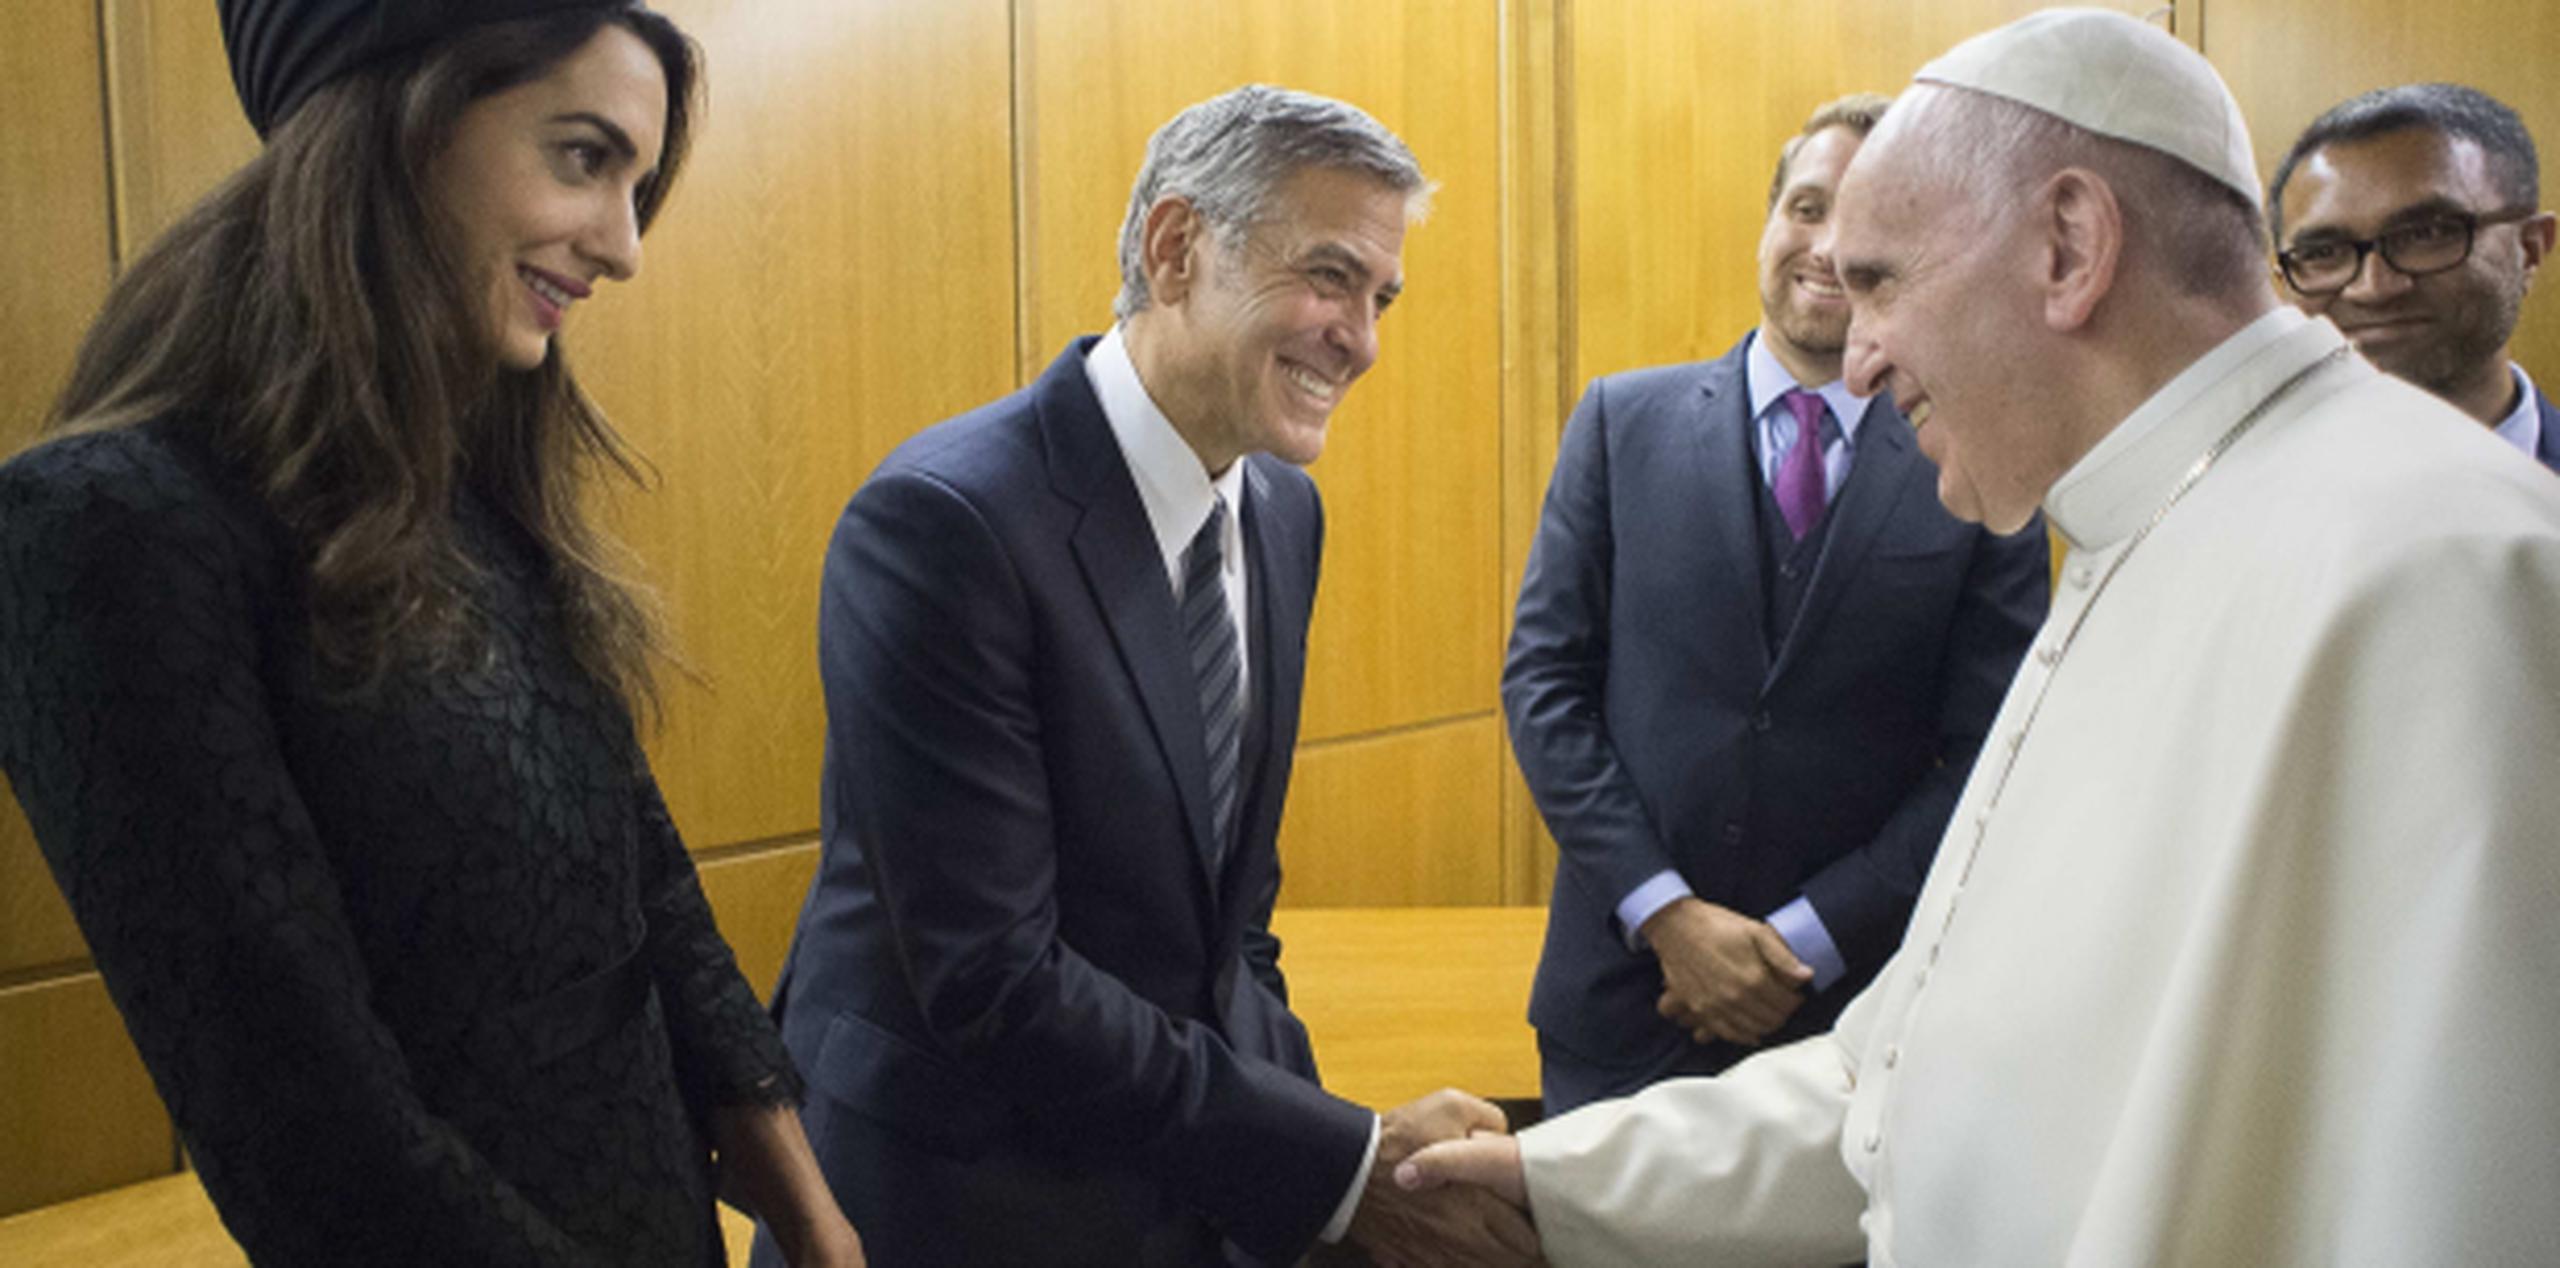 Sonrientes, George Clooney y su esposa Amal saludan al papa. (AP)